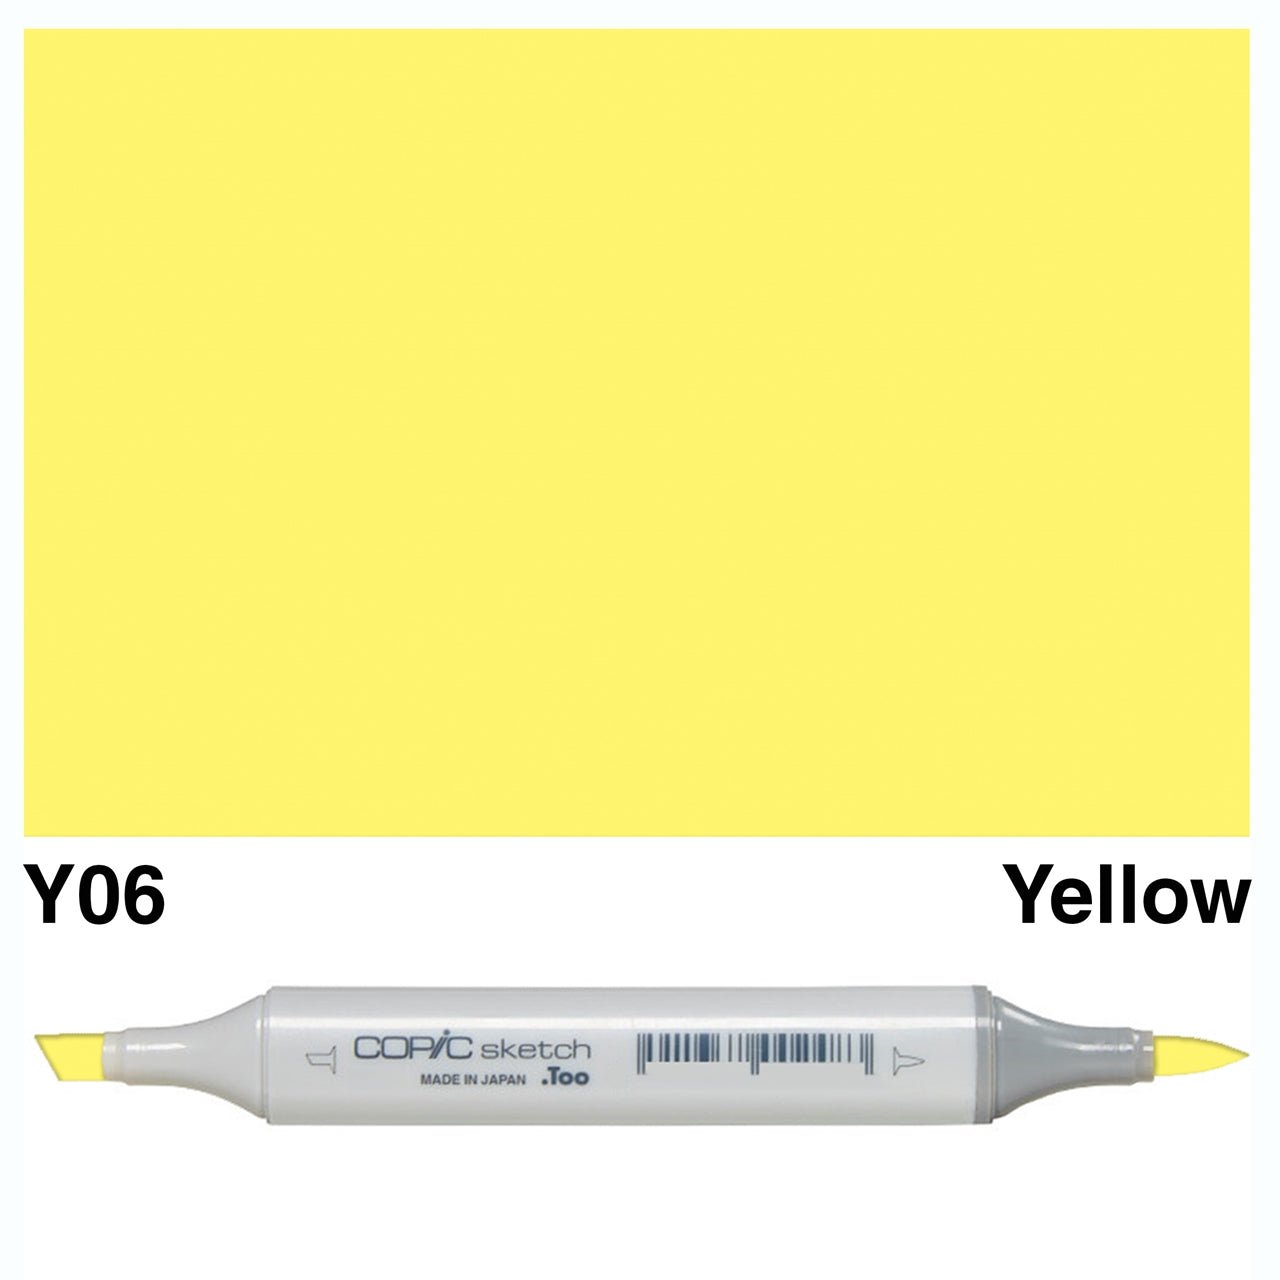 Copic Sketch Y06 Yellow - theartshop.com.au